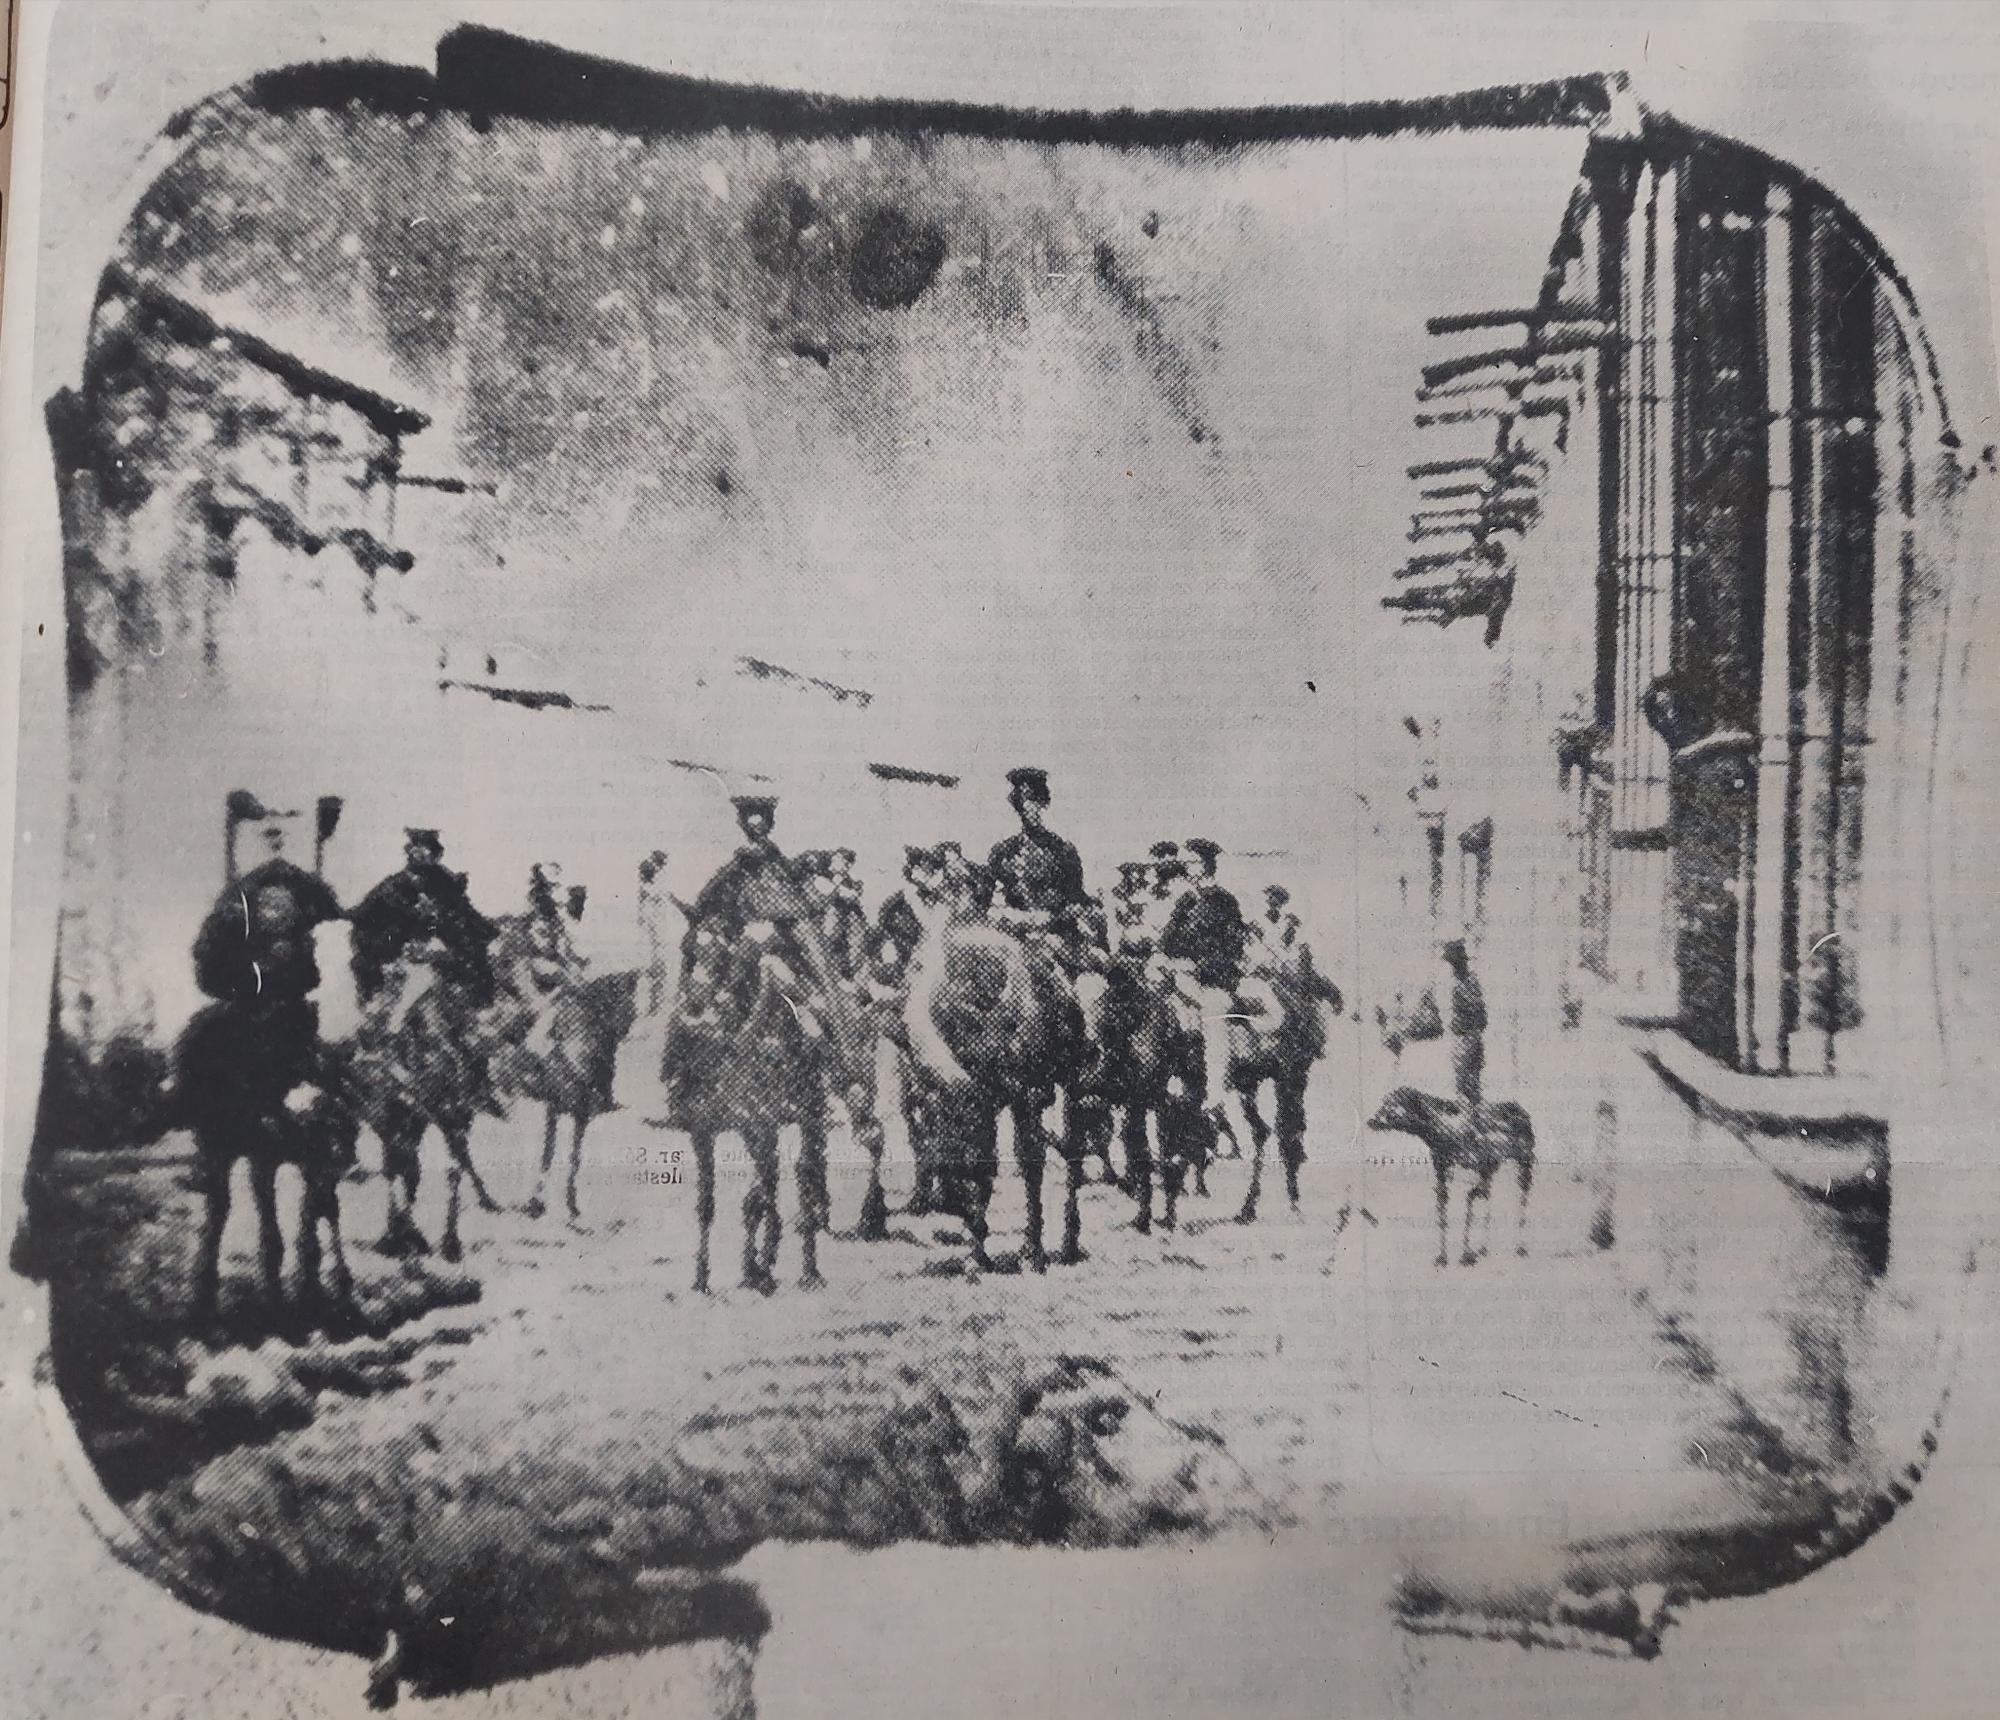 $!La primera foto representa una entrada de soldados a la ciudad.